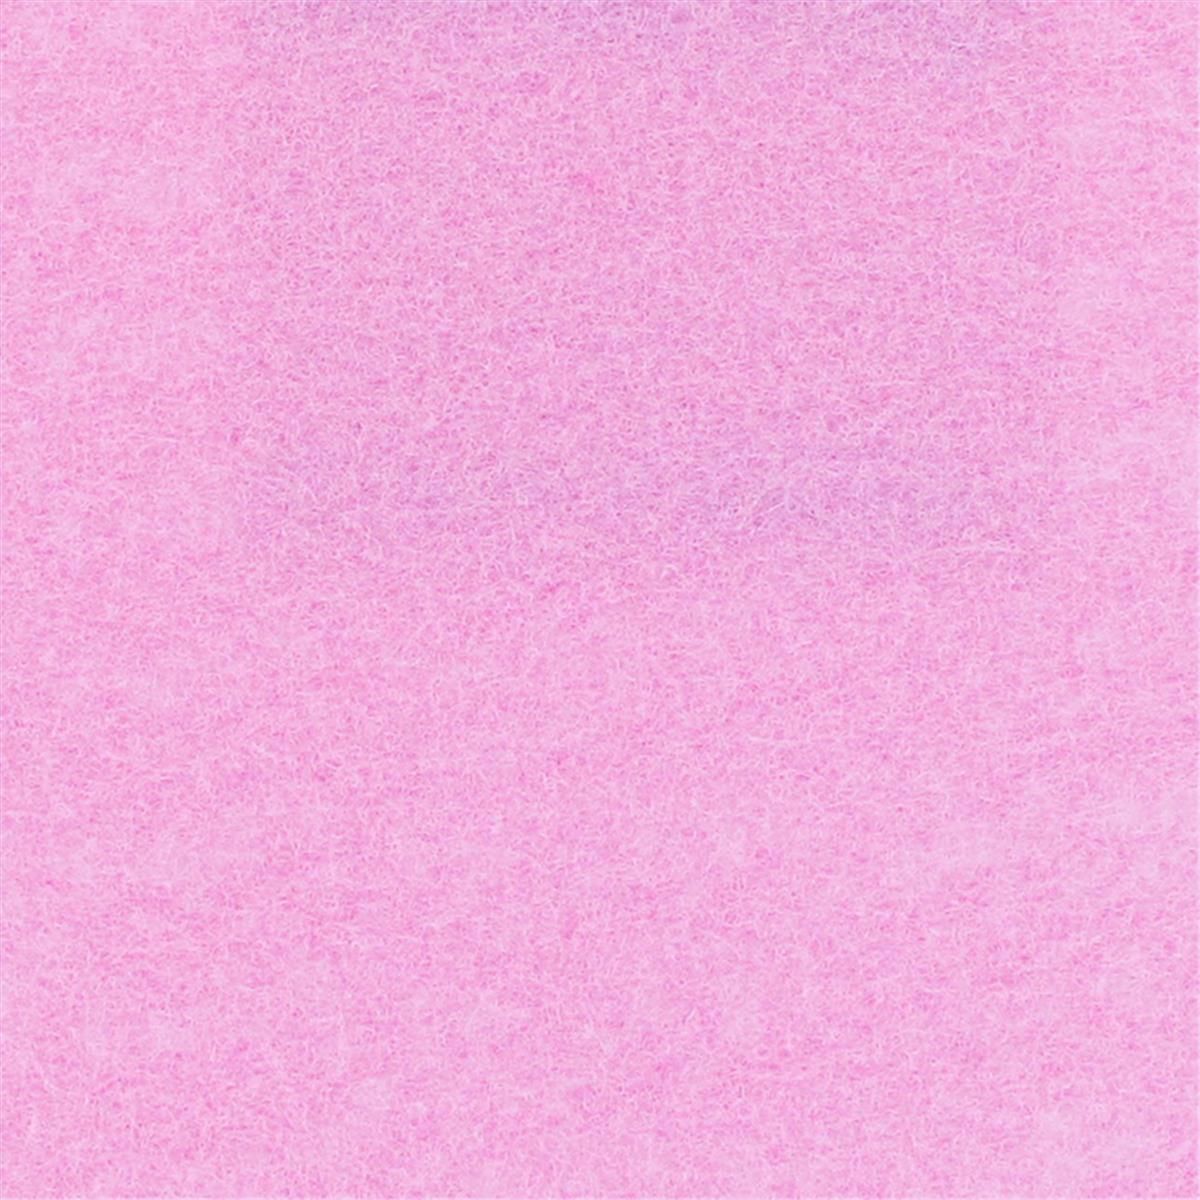 Messeboden Flacher-Nadelvlies EXPOSTYLE Candy Pink 1722 mit Schutzfolie  - Rollenbreite 200 cm